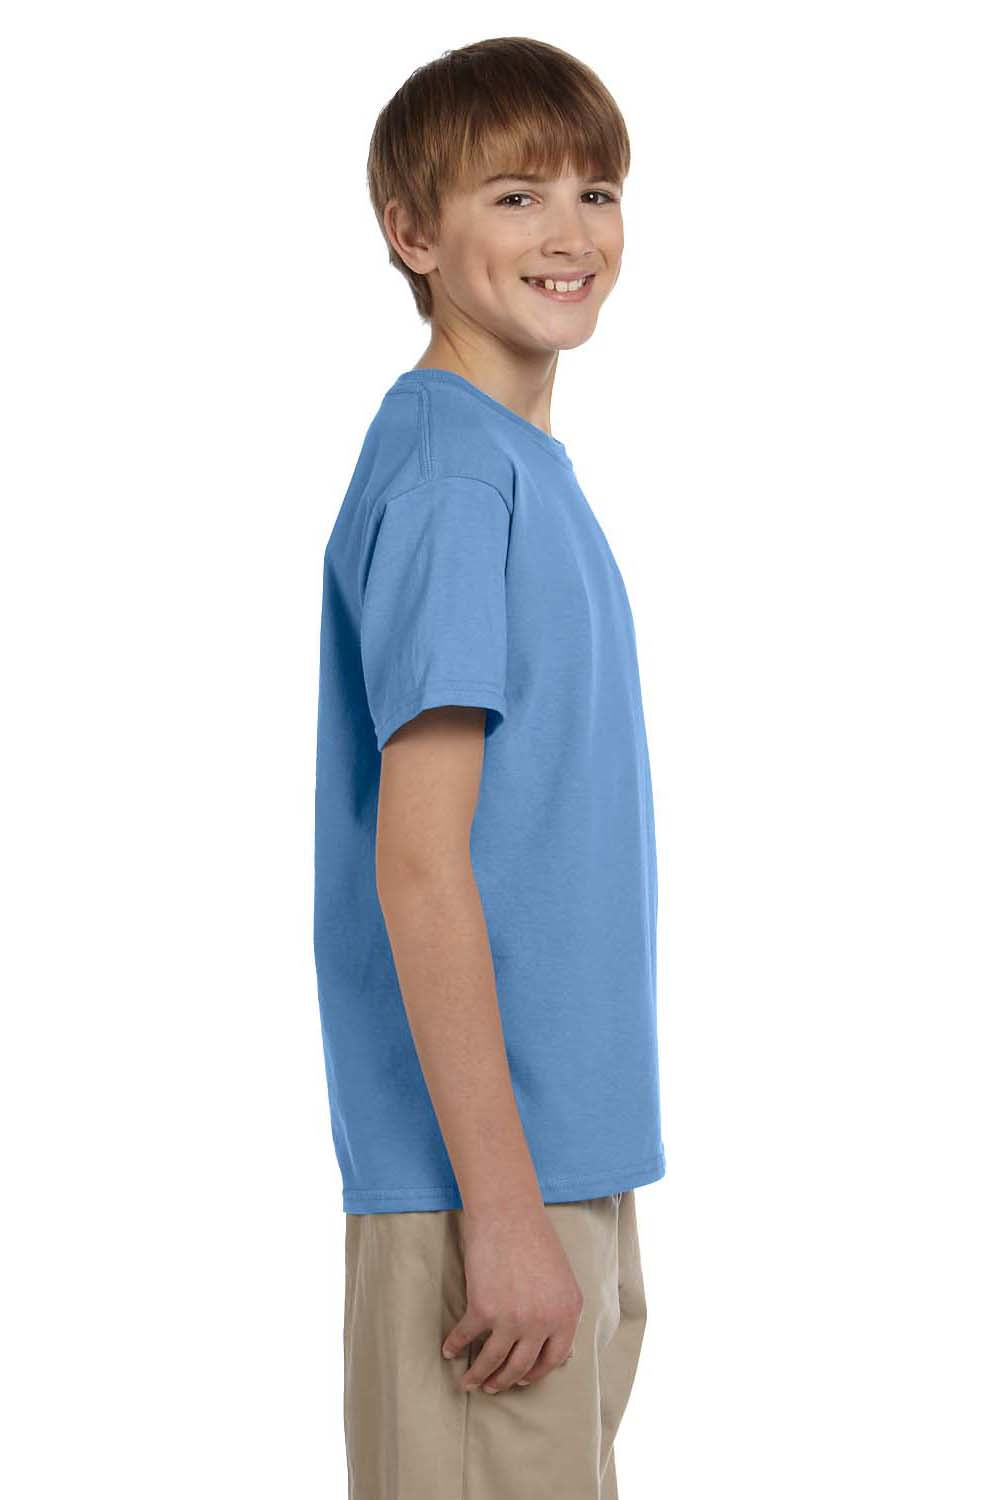 Hanes 5370 Youth EcoSmart Short Sleeve Crewneck T-Shirt Carolina Blue Side